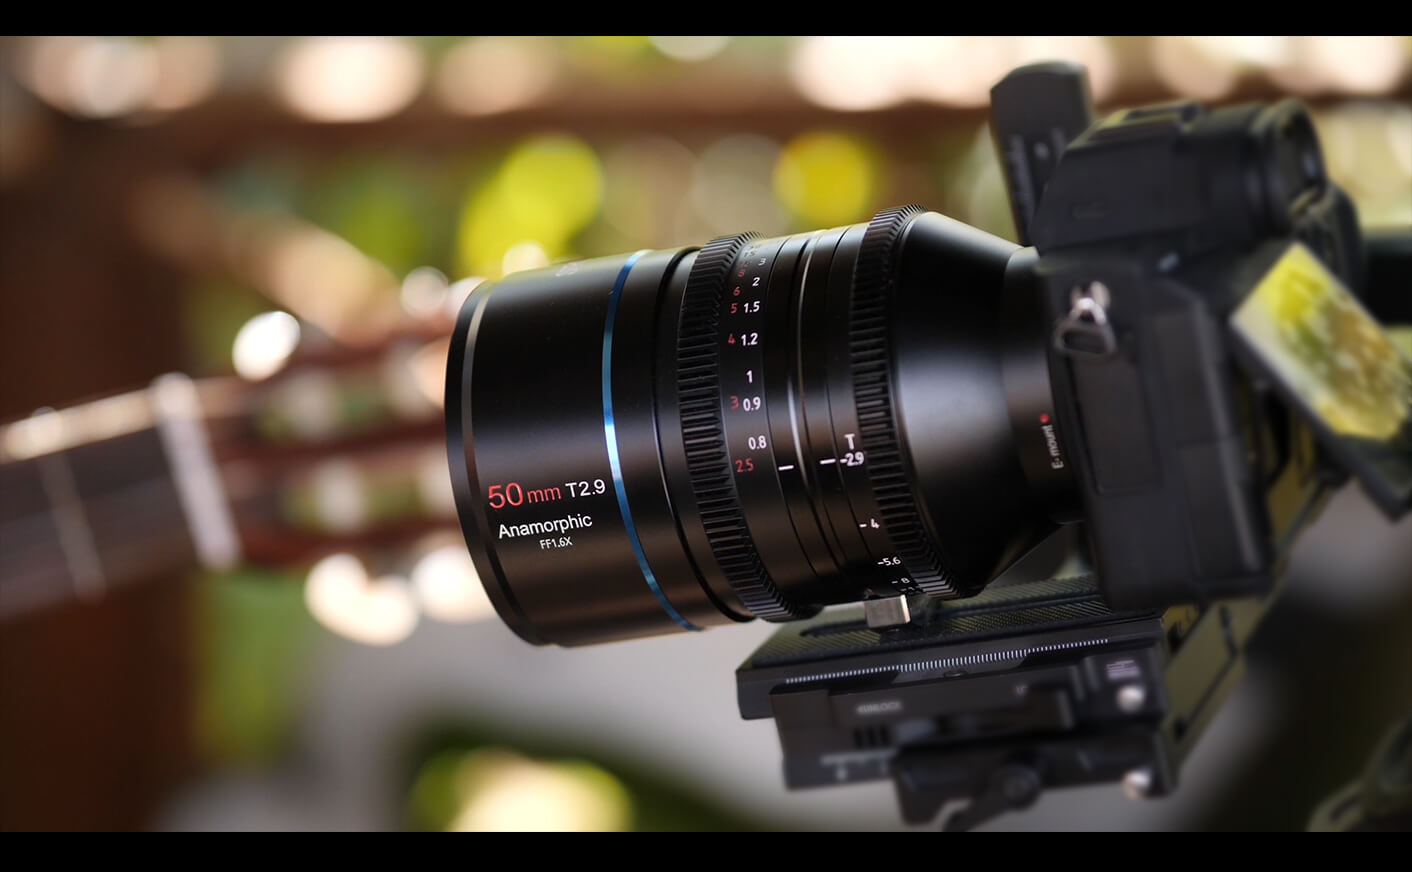 50mm T2.9 1.6x Full-Frame Anamorphic Lens